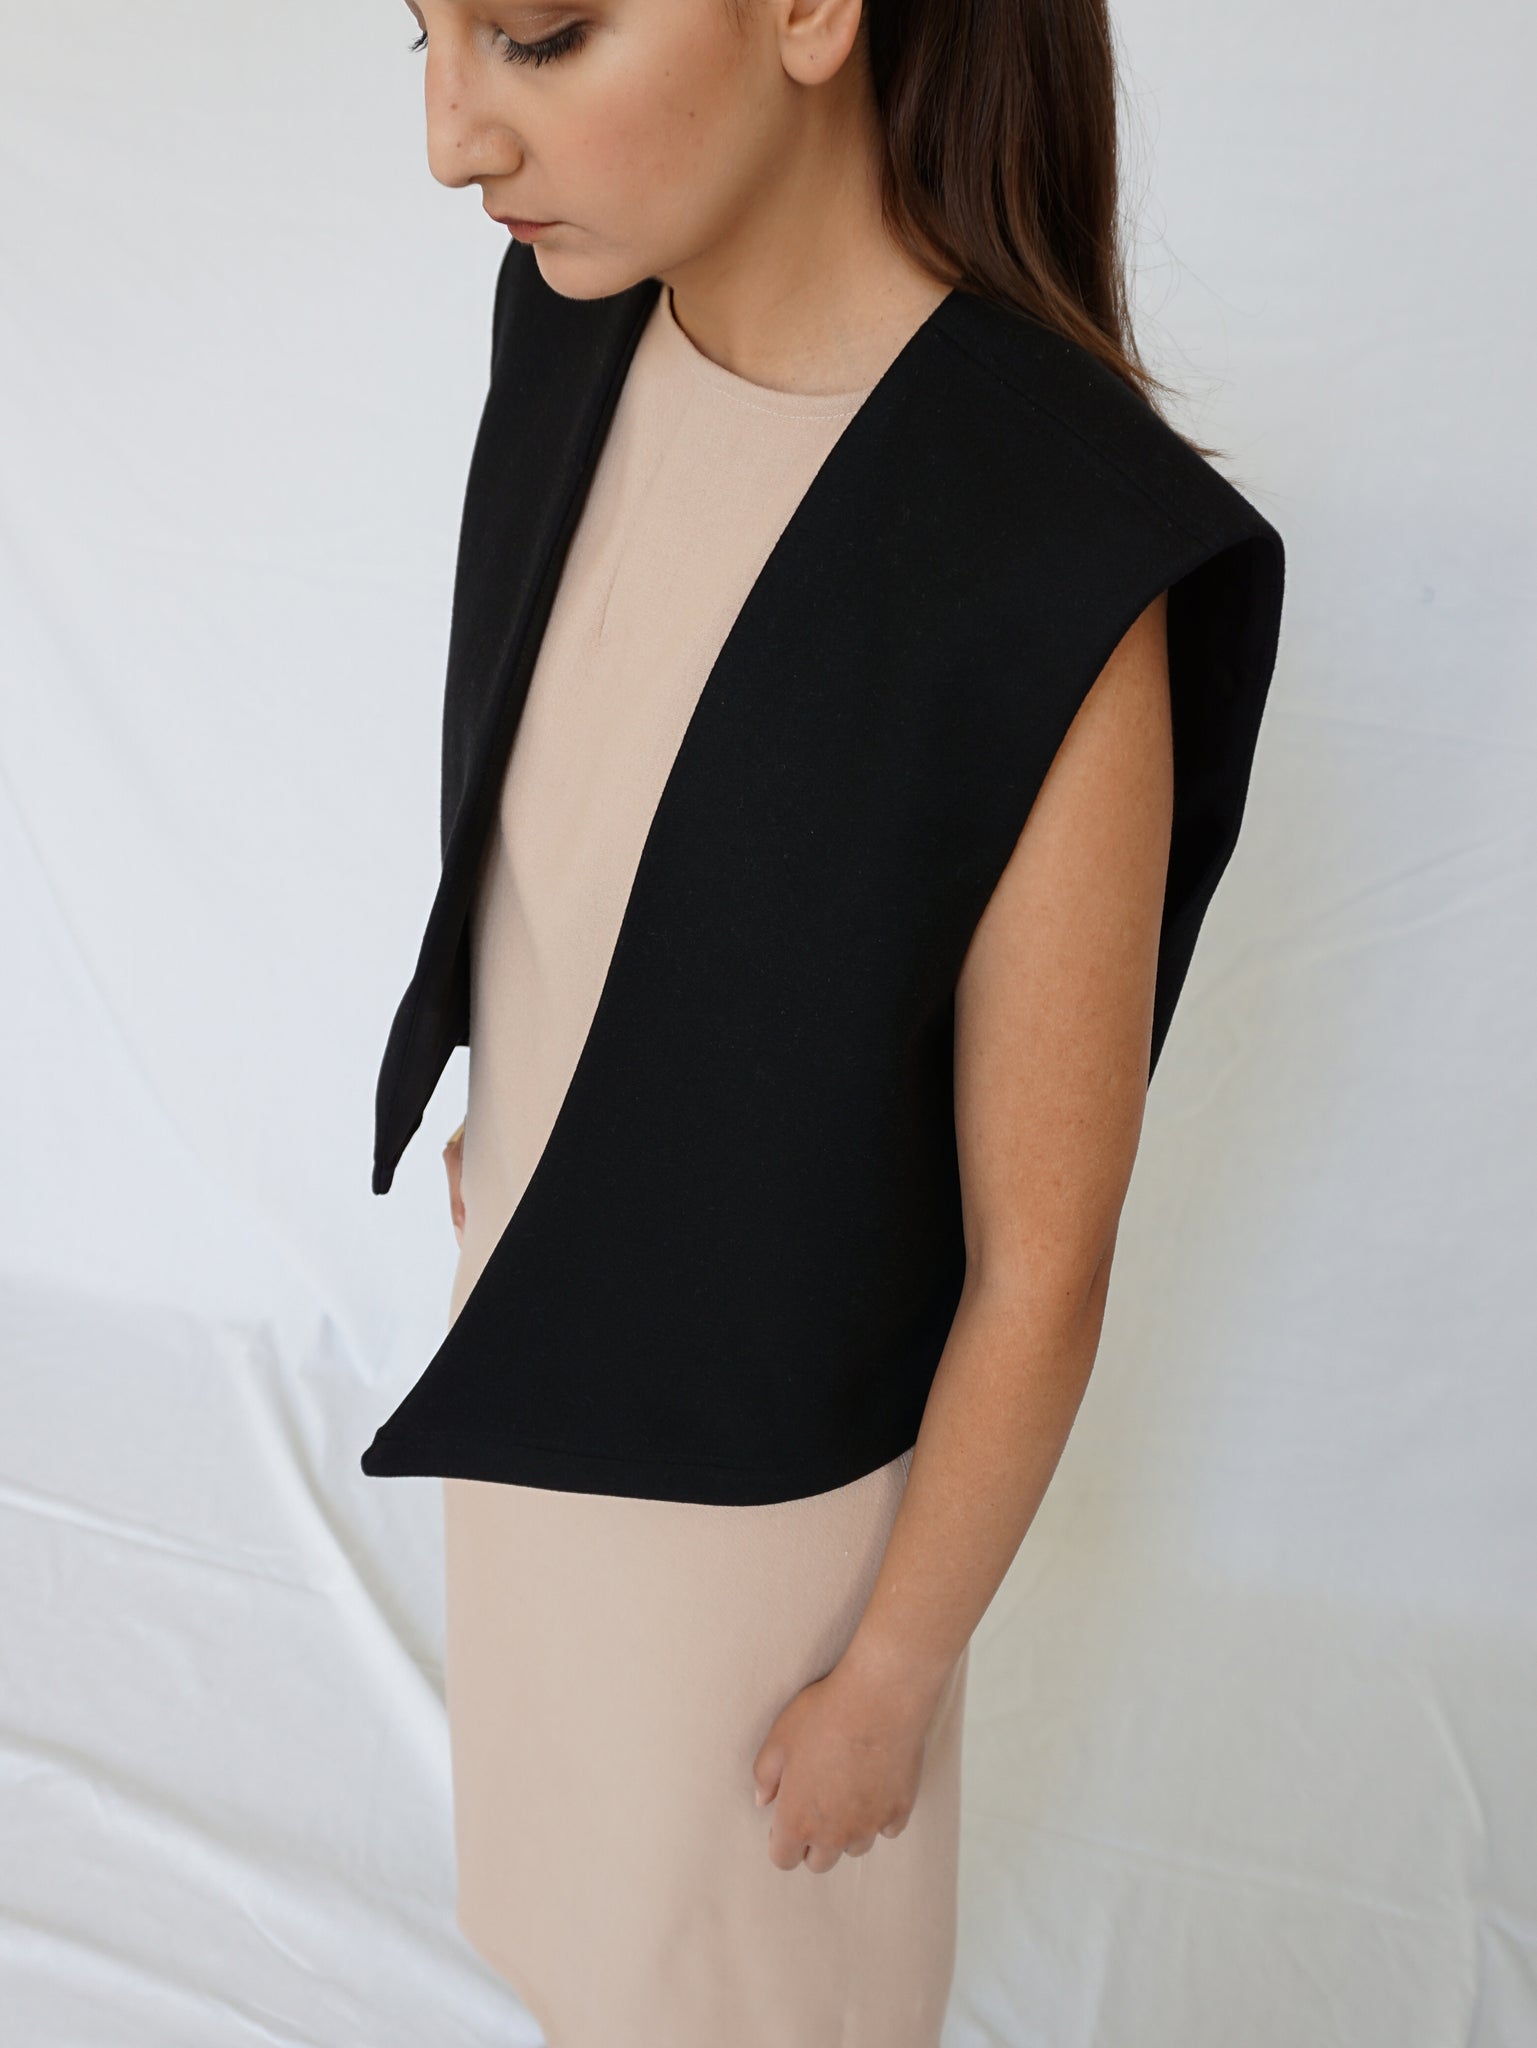 The Asymmetric Wool Vest in Black